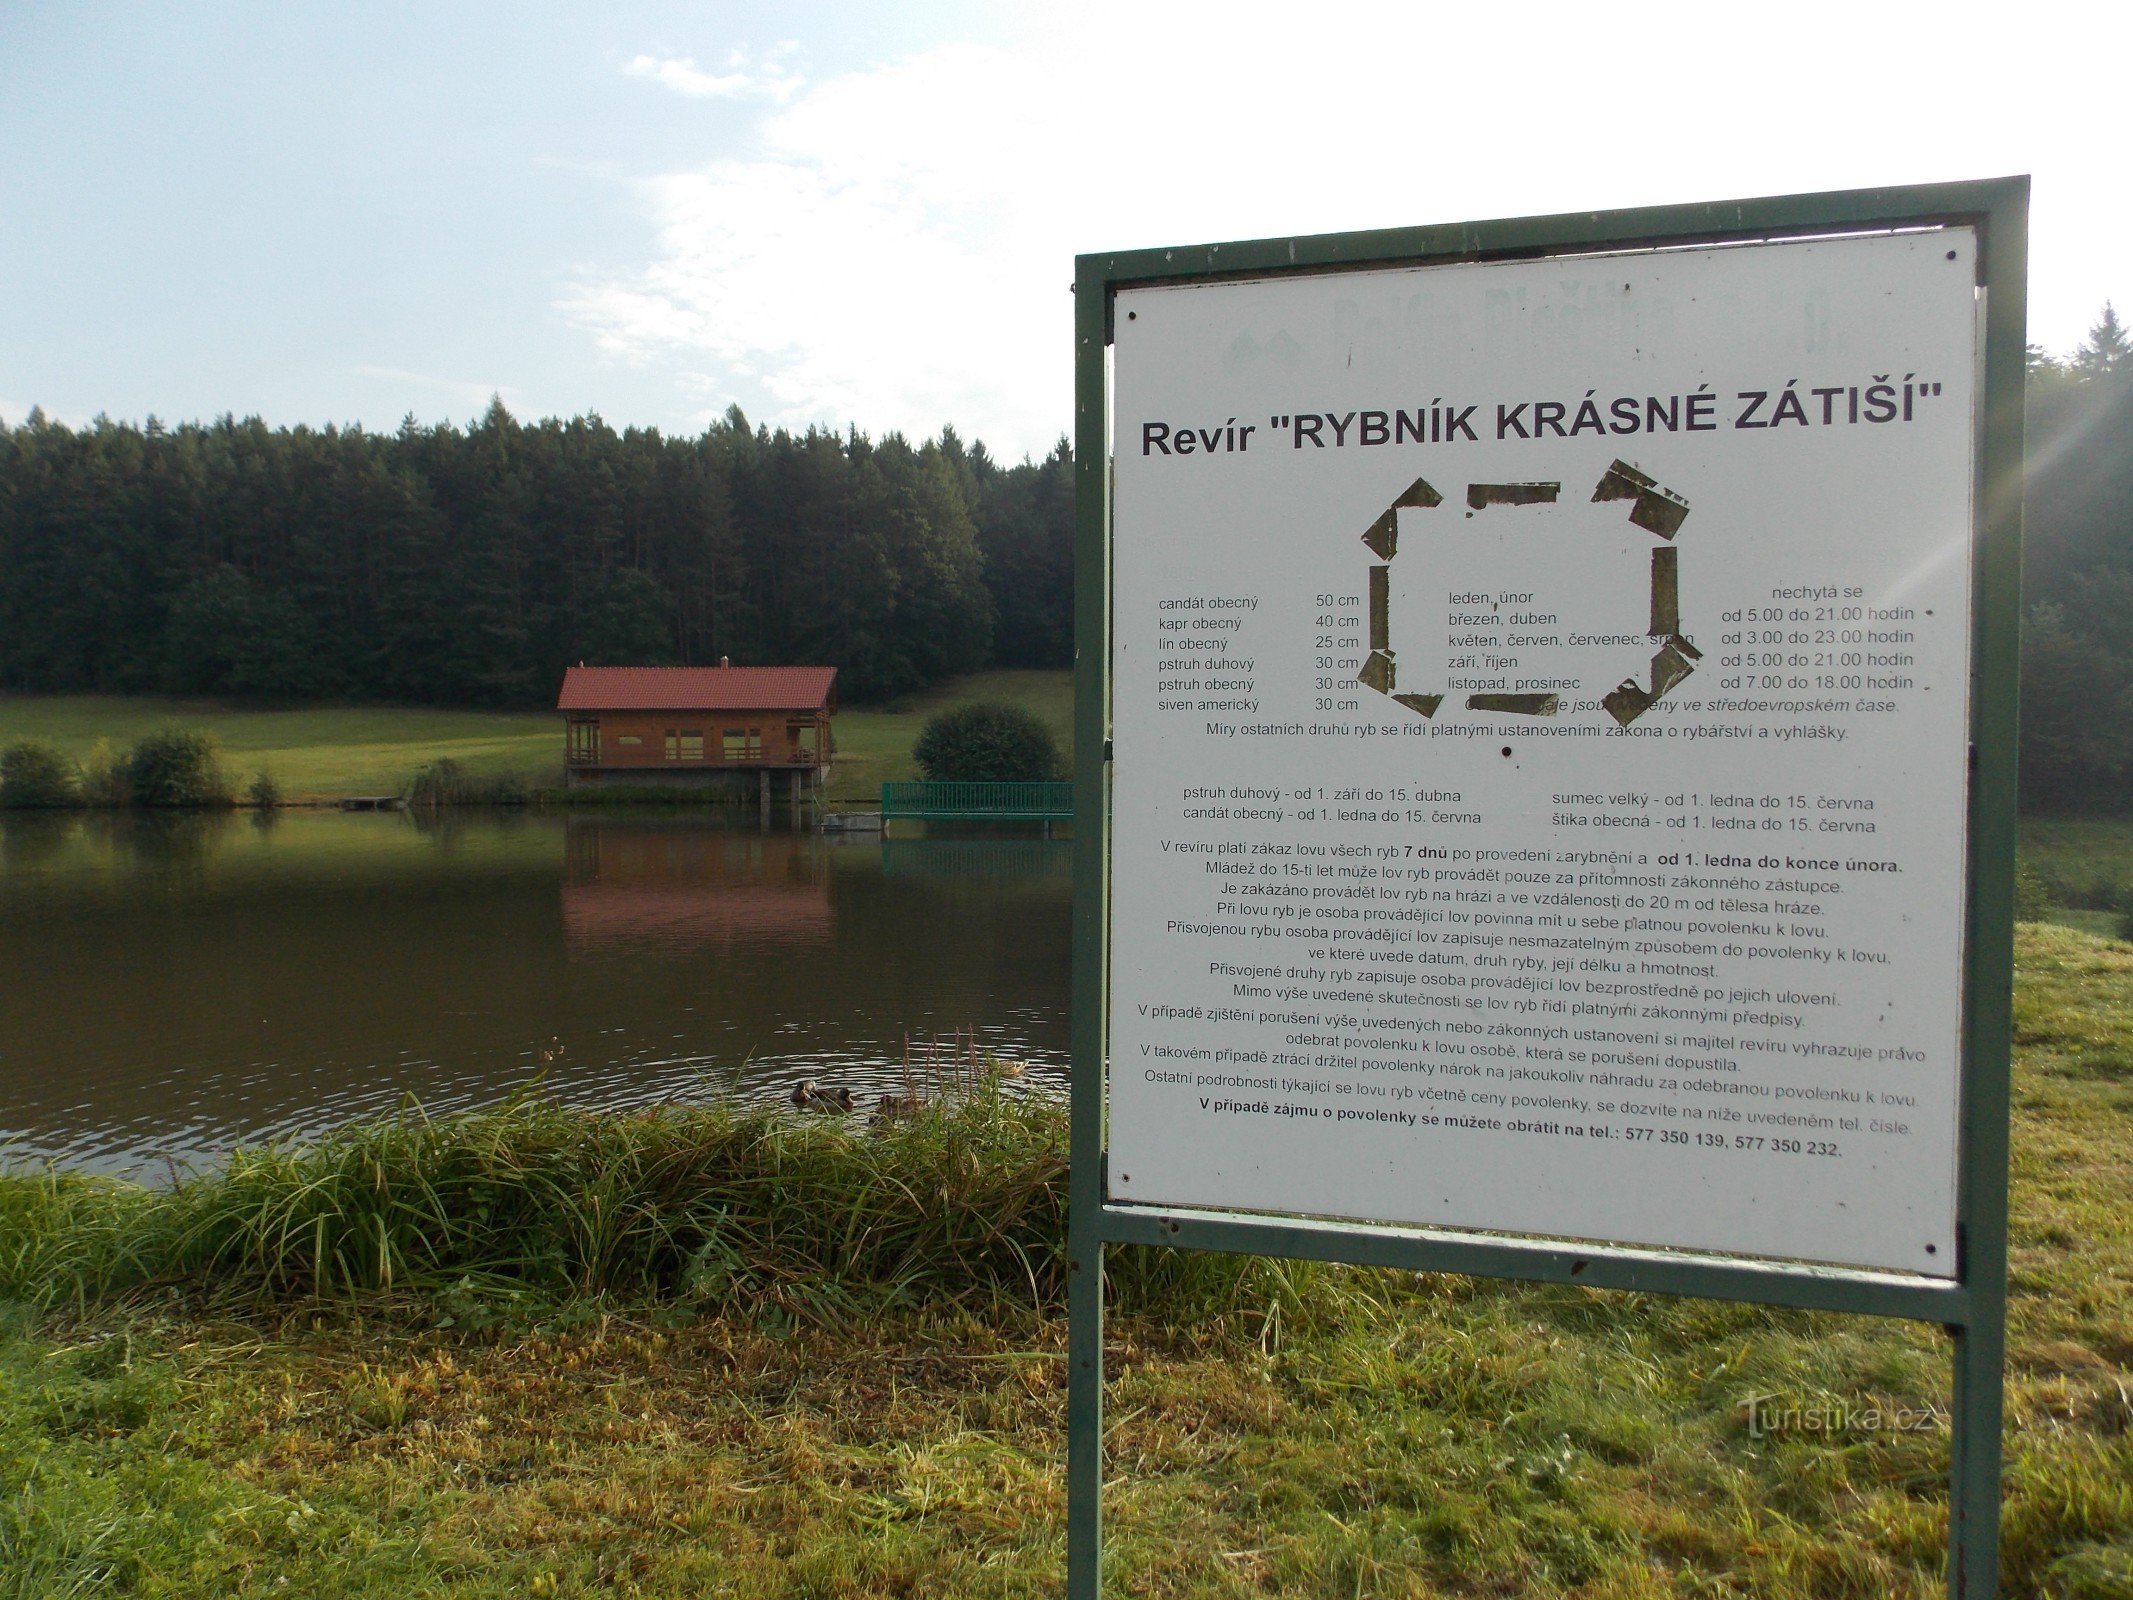 Rybník - Prekrasna mrtva priroda u blizini Újezda u blizini Valašské Klobouka